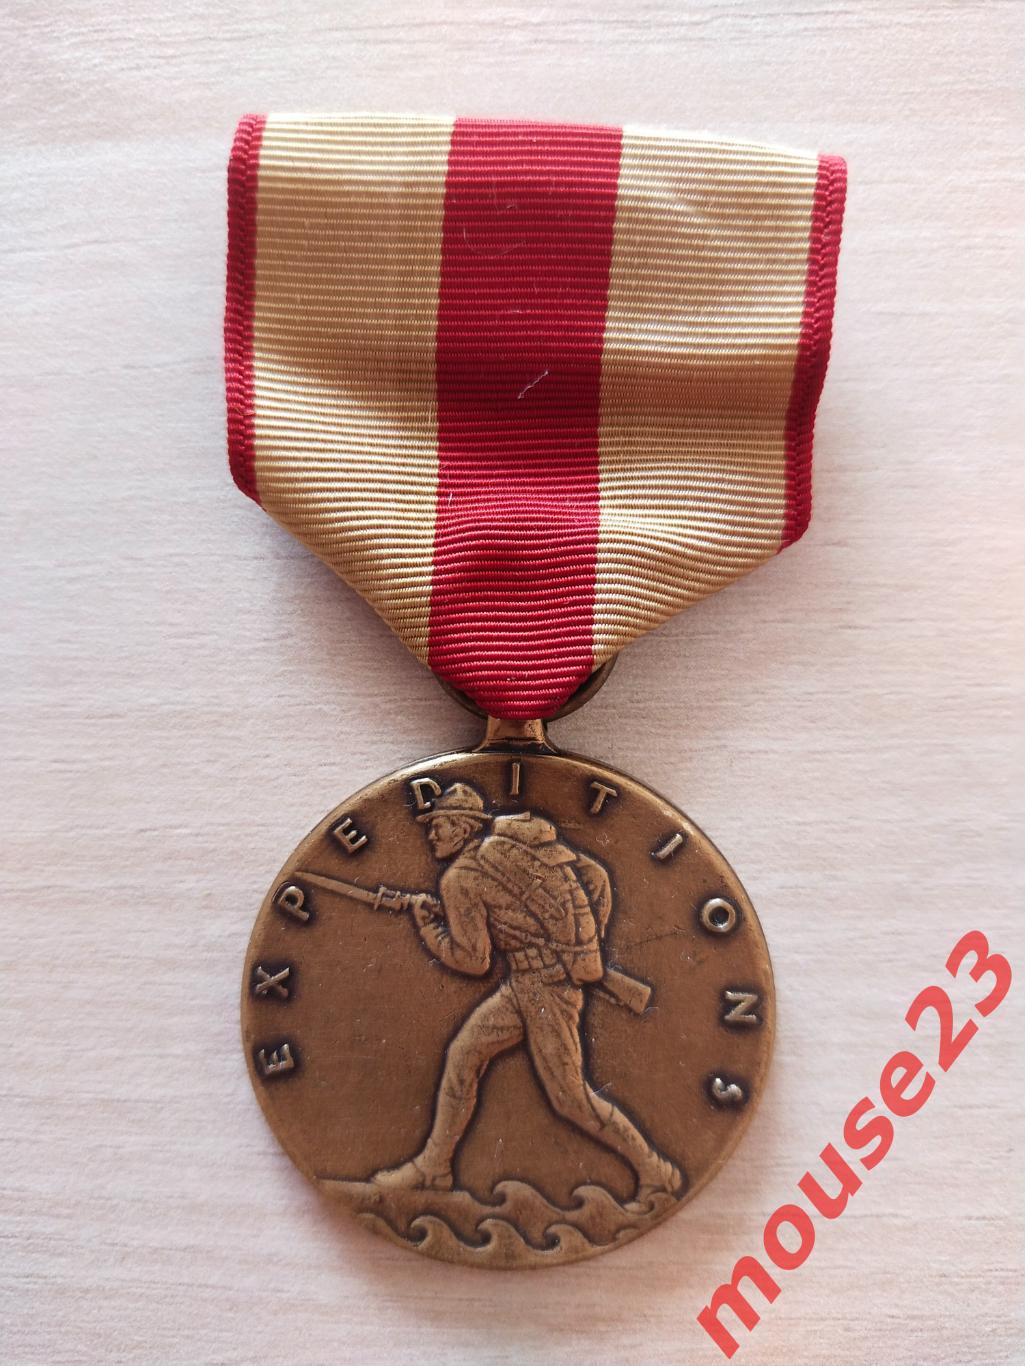 Экспедиционная медаль Корпуса морской пехоты США.